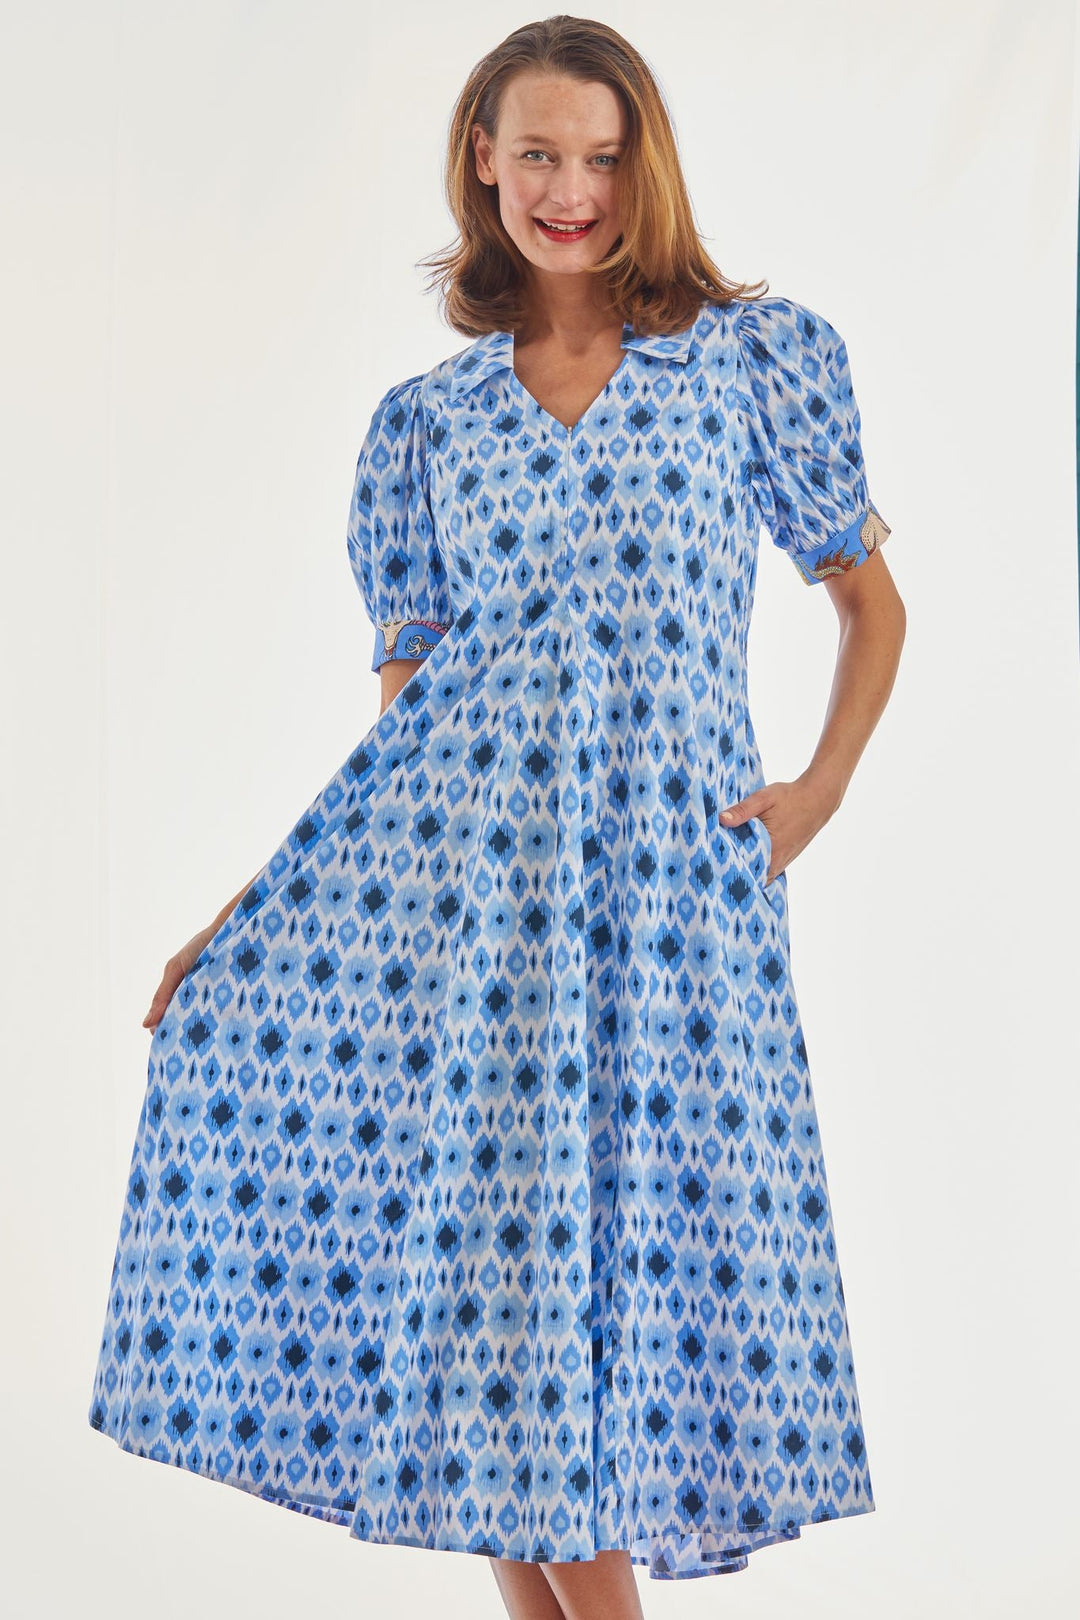 Dizzy Lizzie Montauk Dress Blue Ikat Print